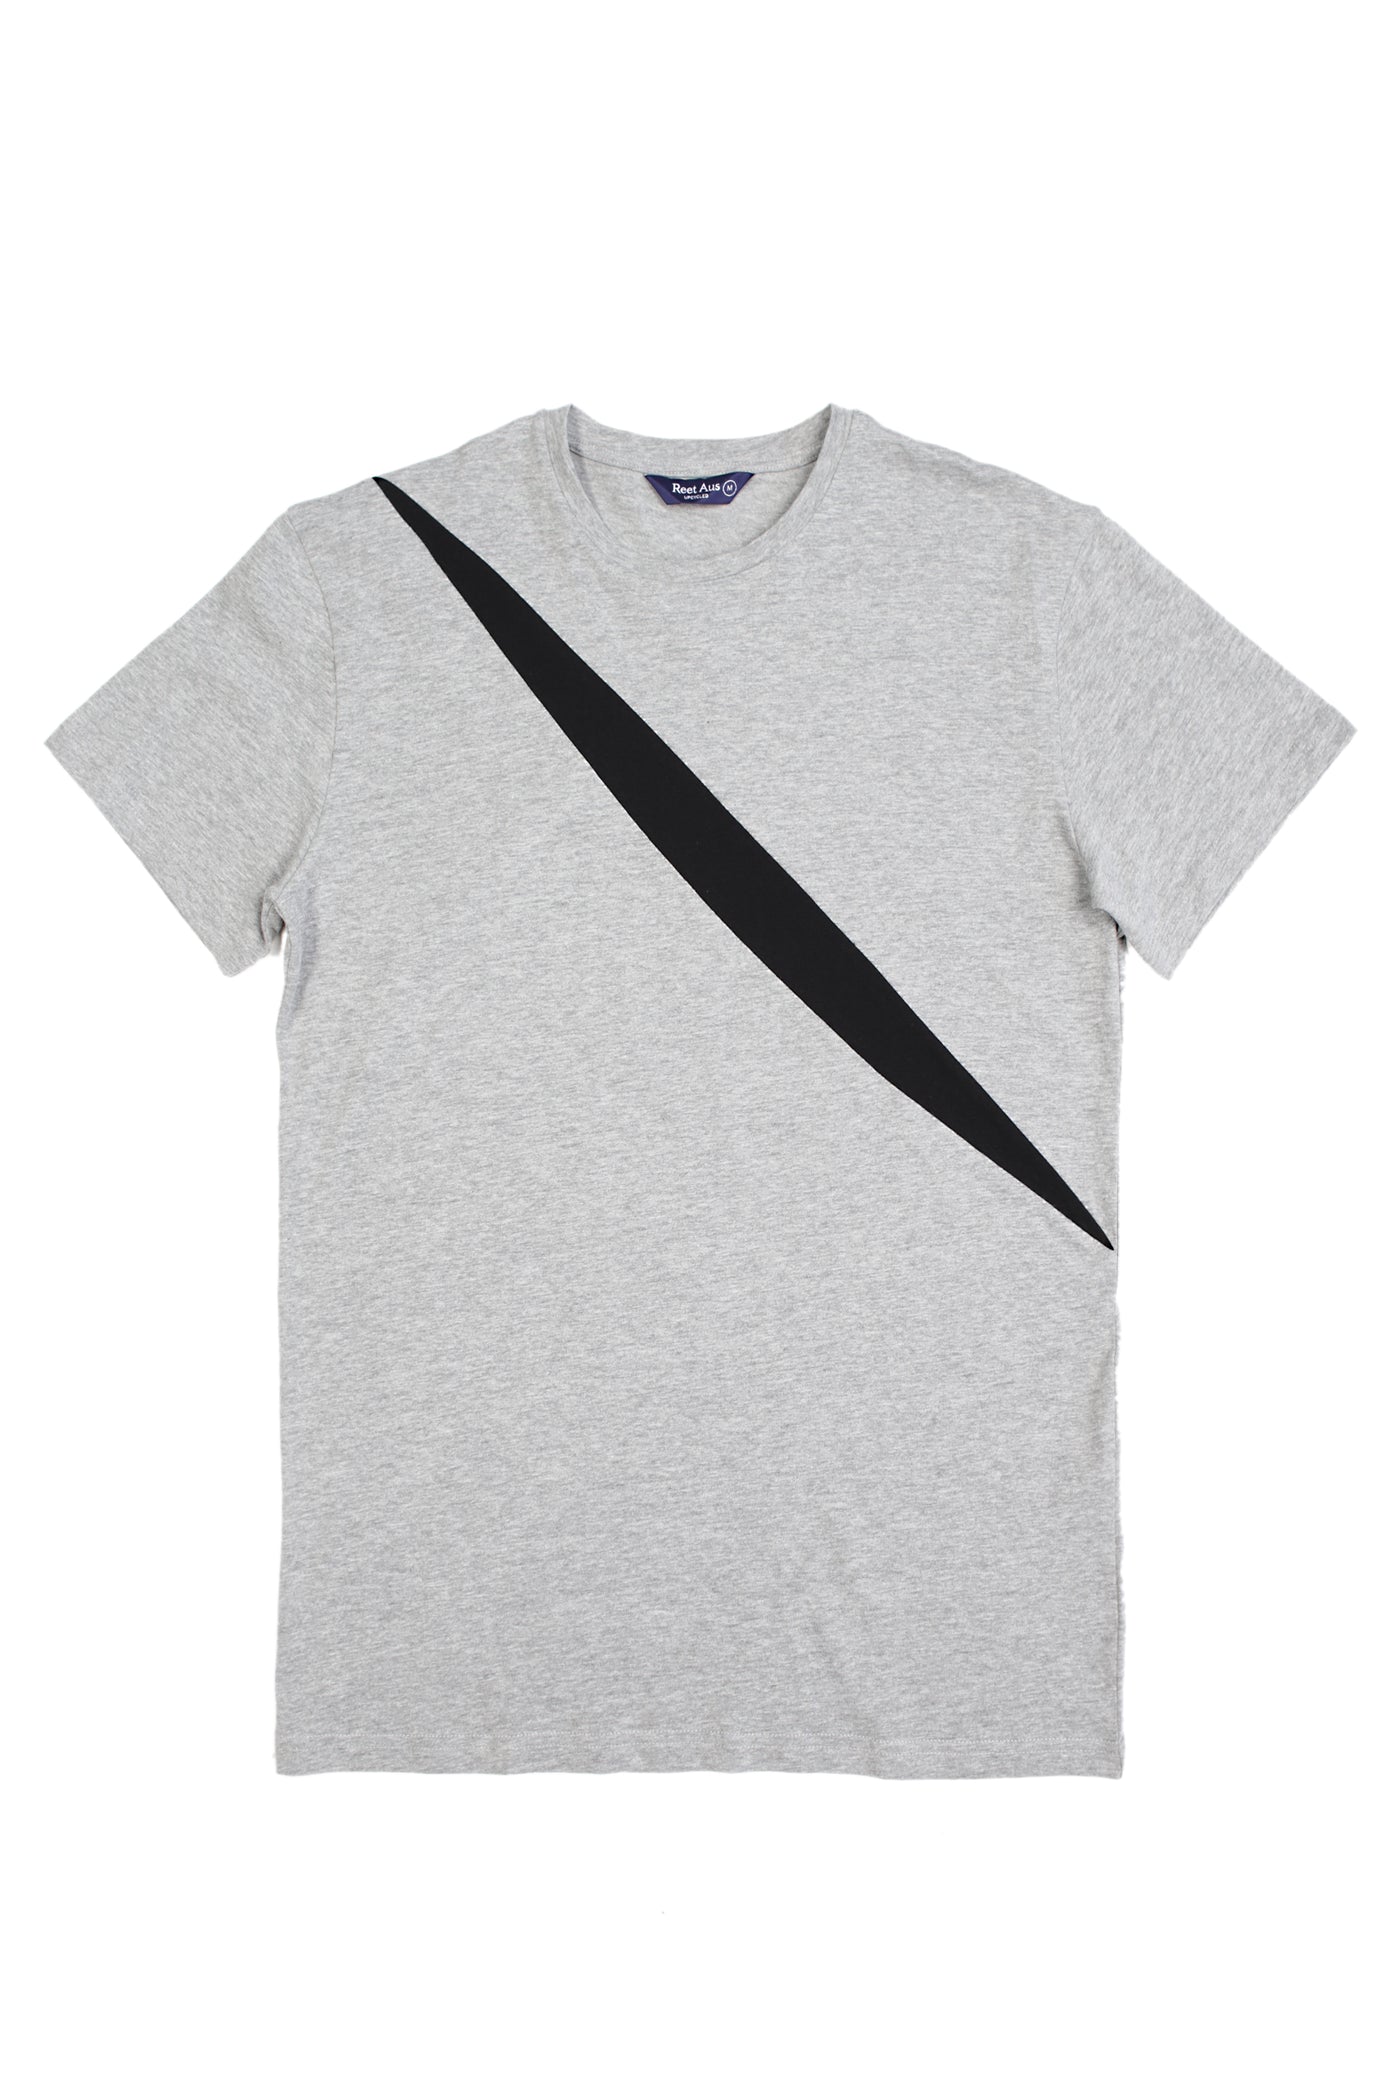 Up-shirt for men, slash motif | Grey, black - Reet Aus